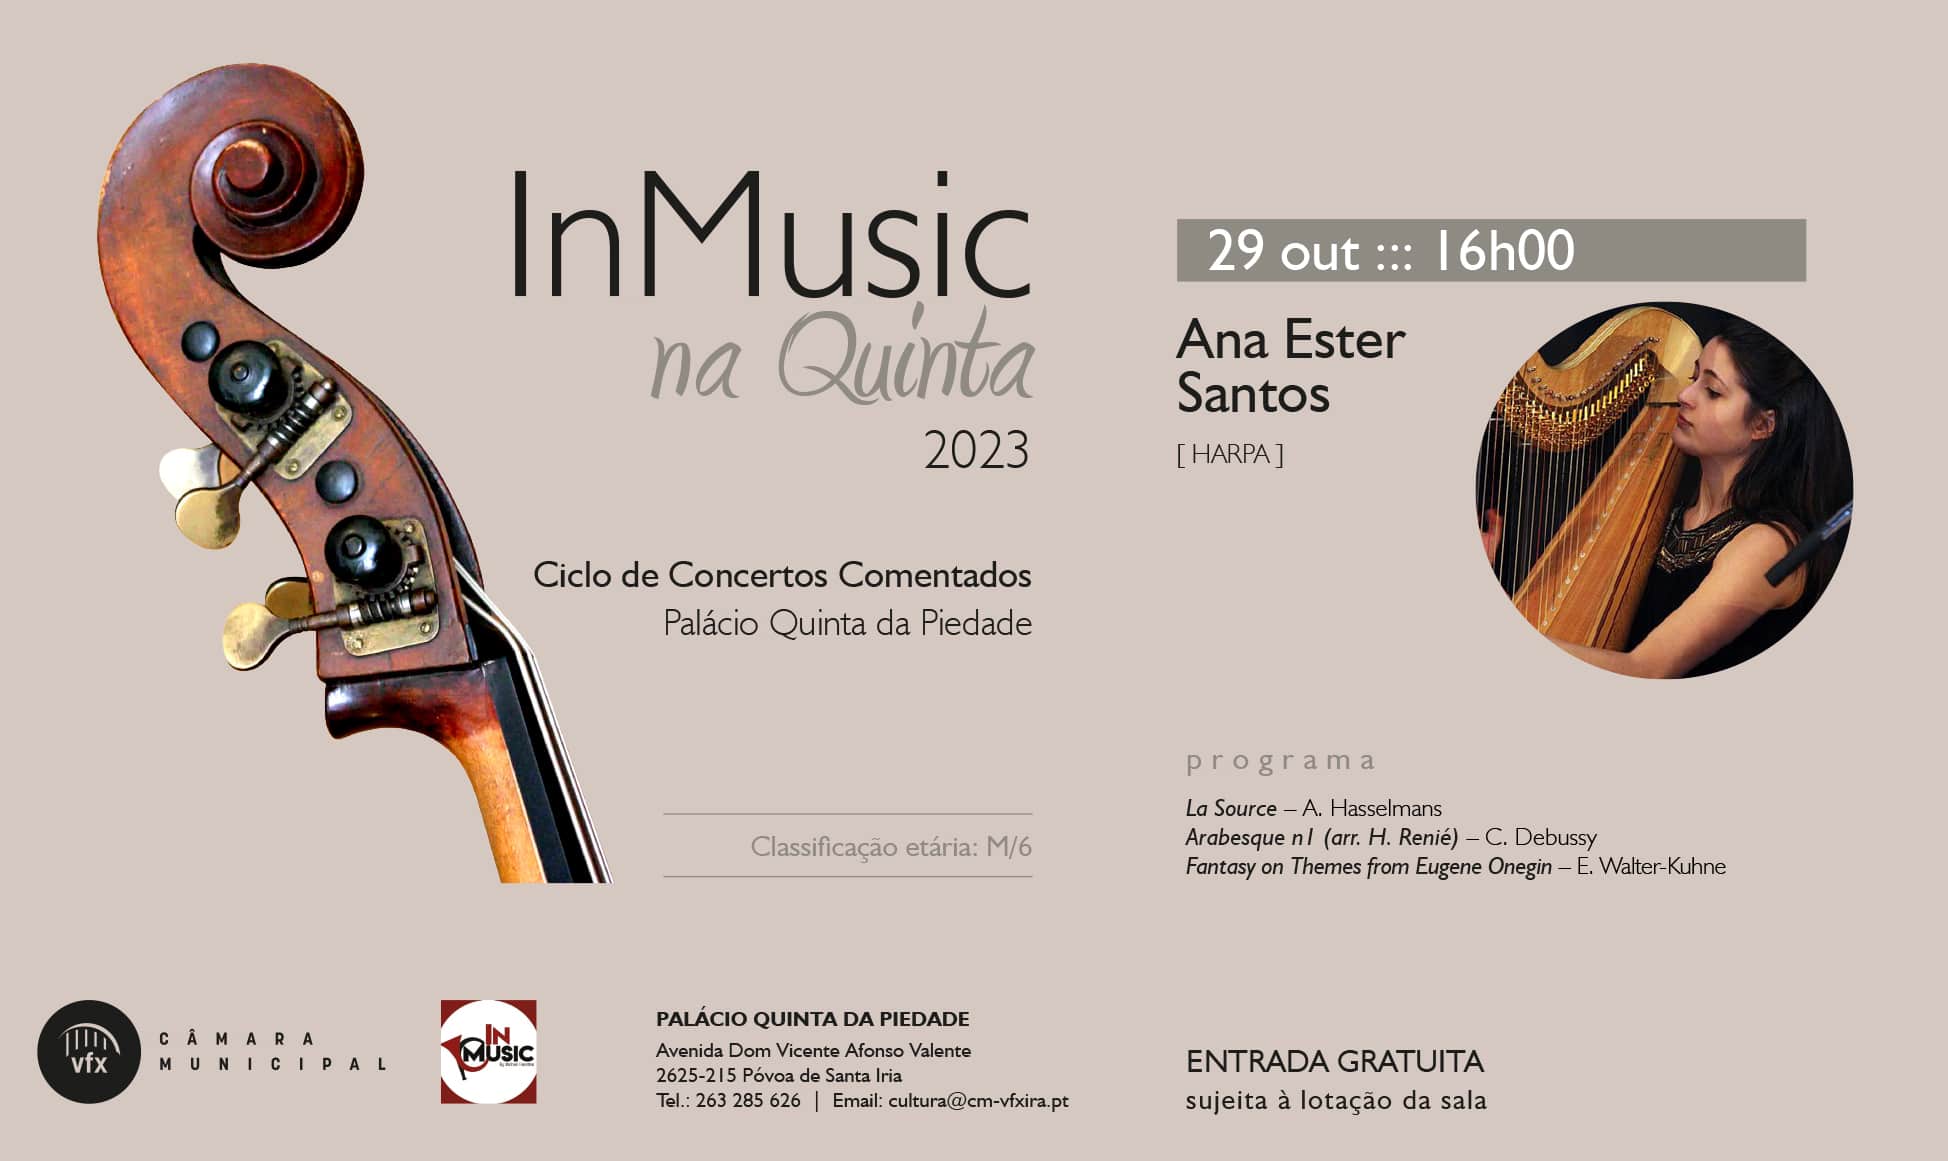 InMusic na Quinta - Ana Ester Santos na harpa